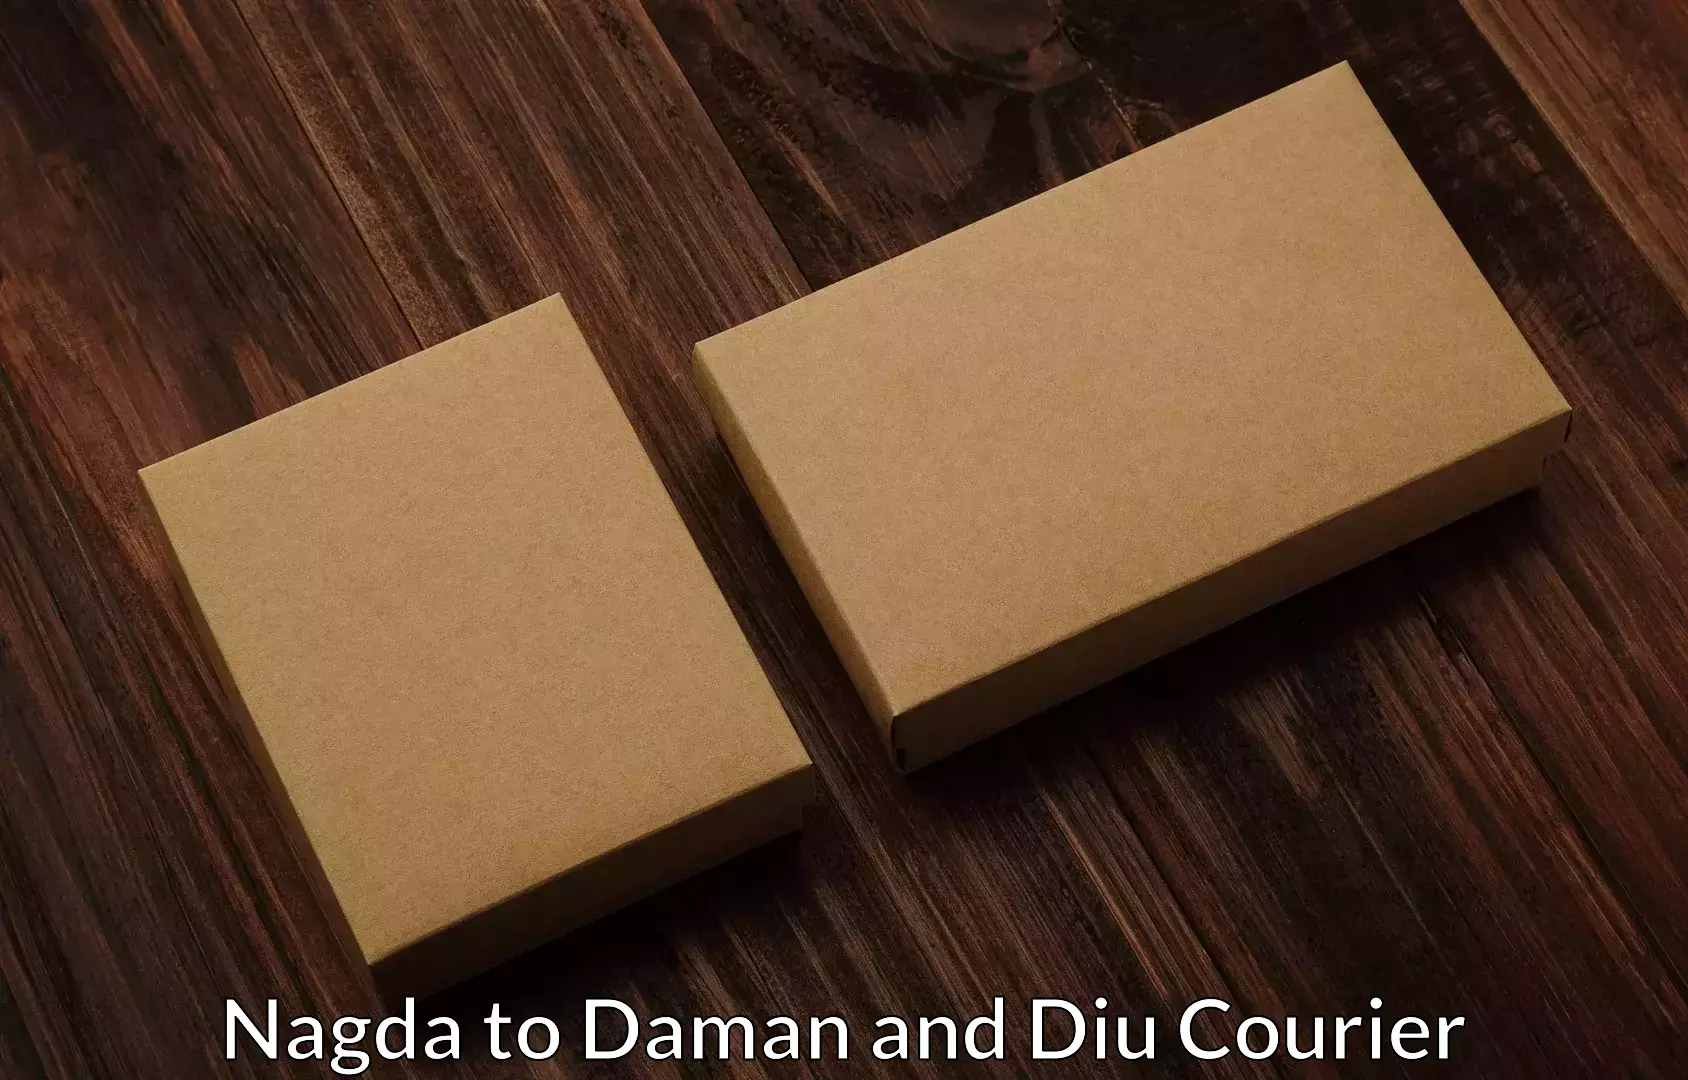 Reliable movers Nagda to Daman and Diu